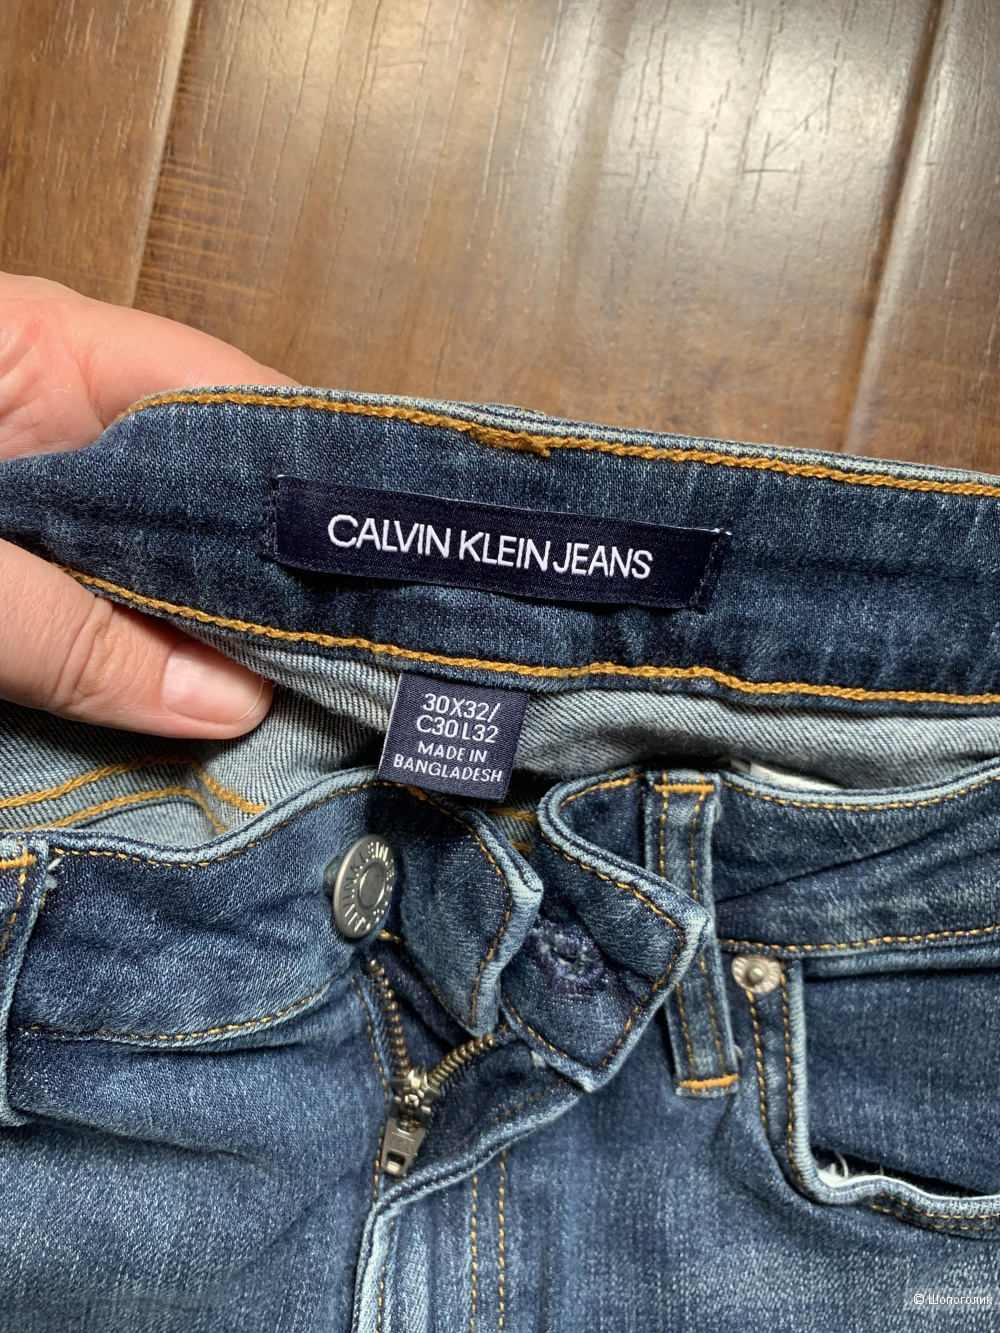 Calvin Klein джинсы 30 размер